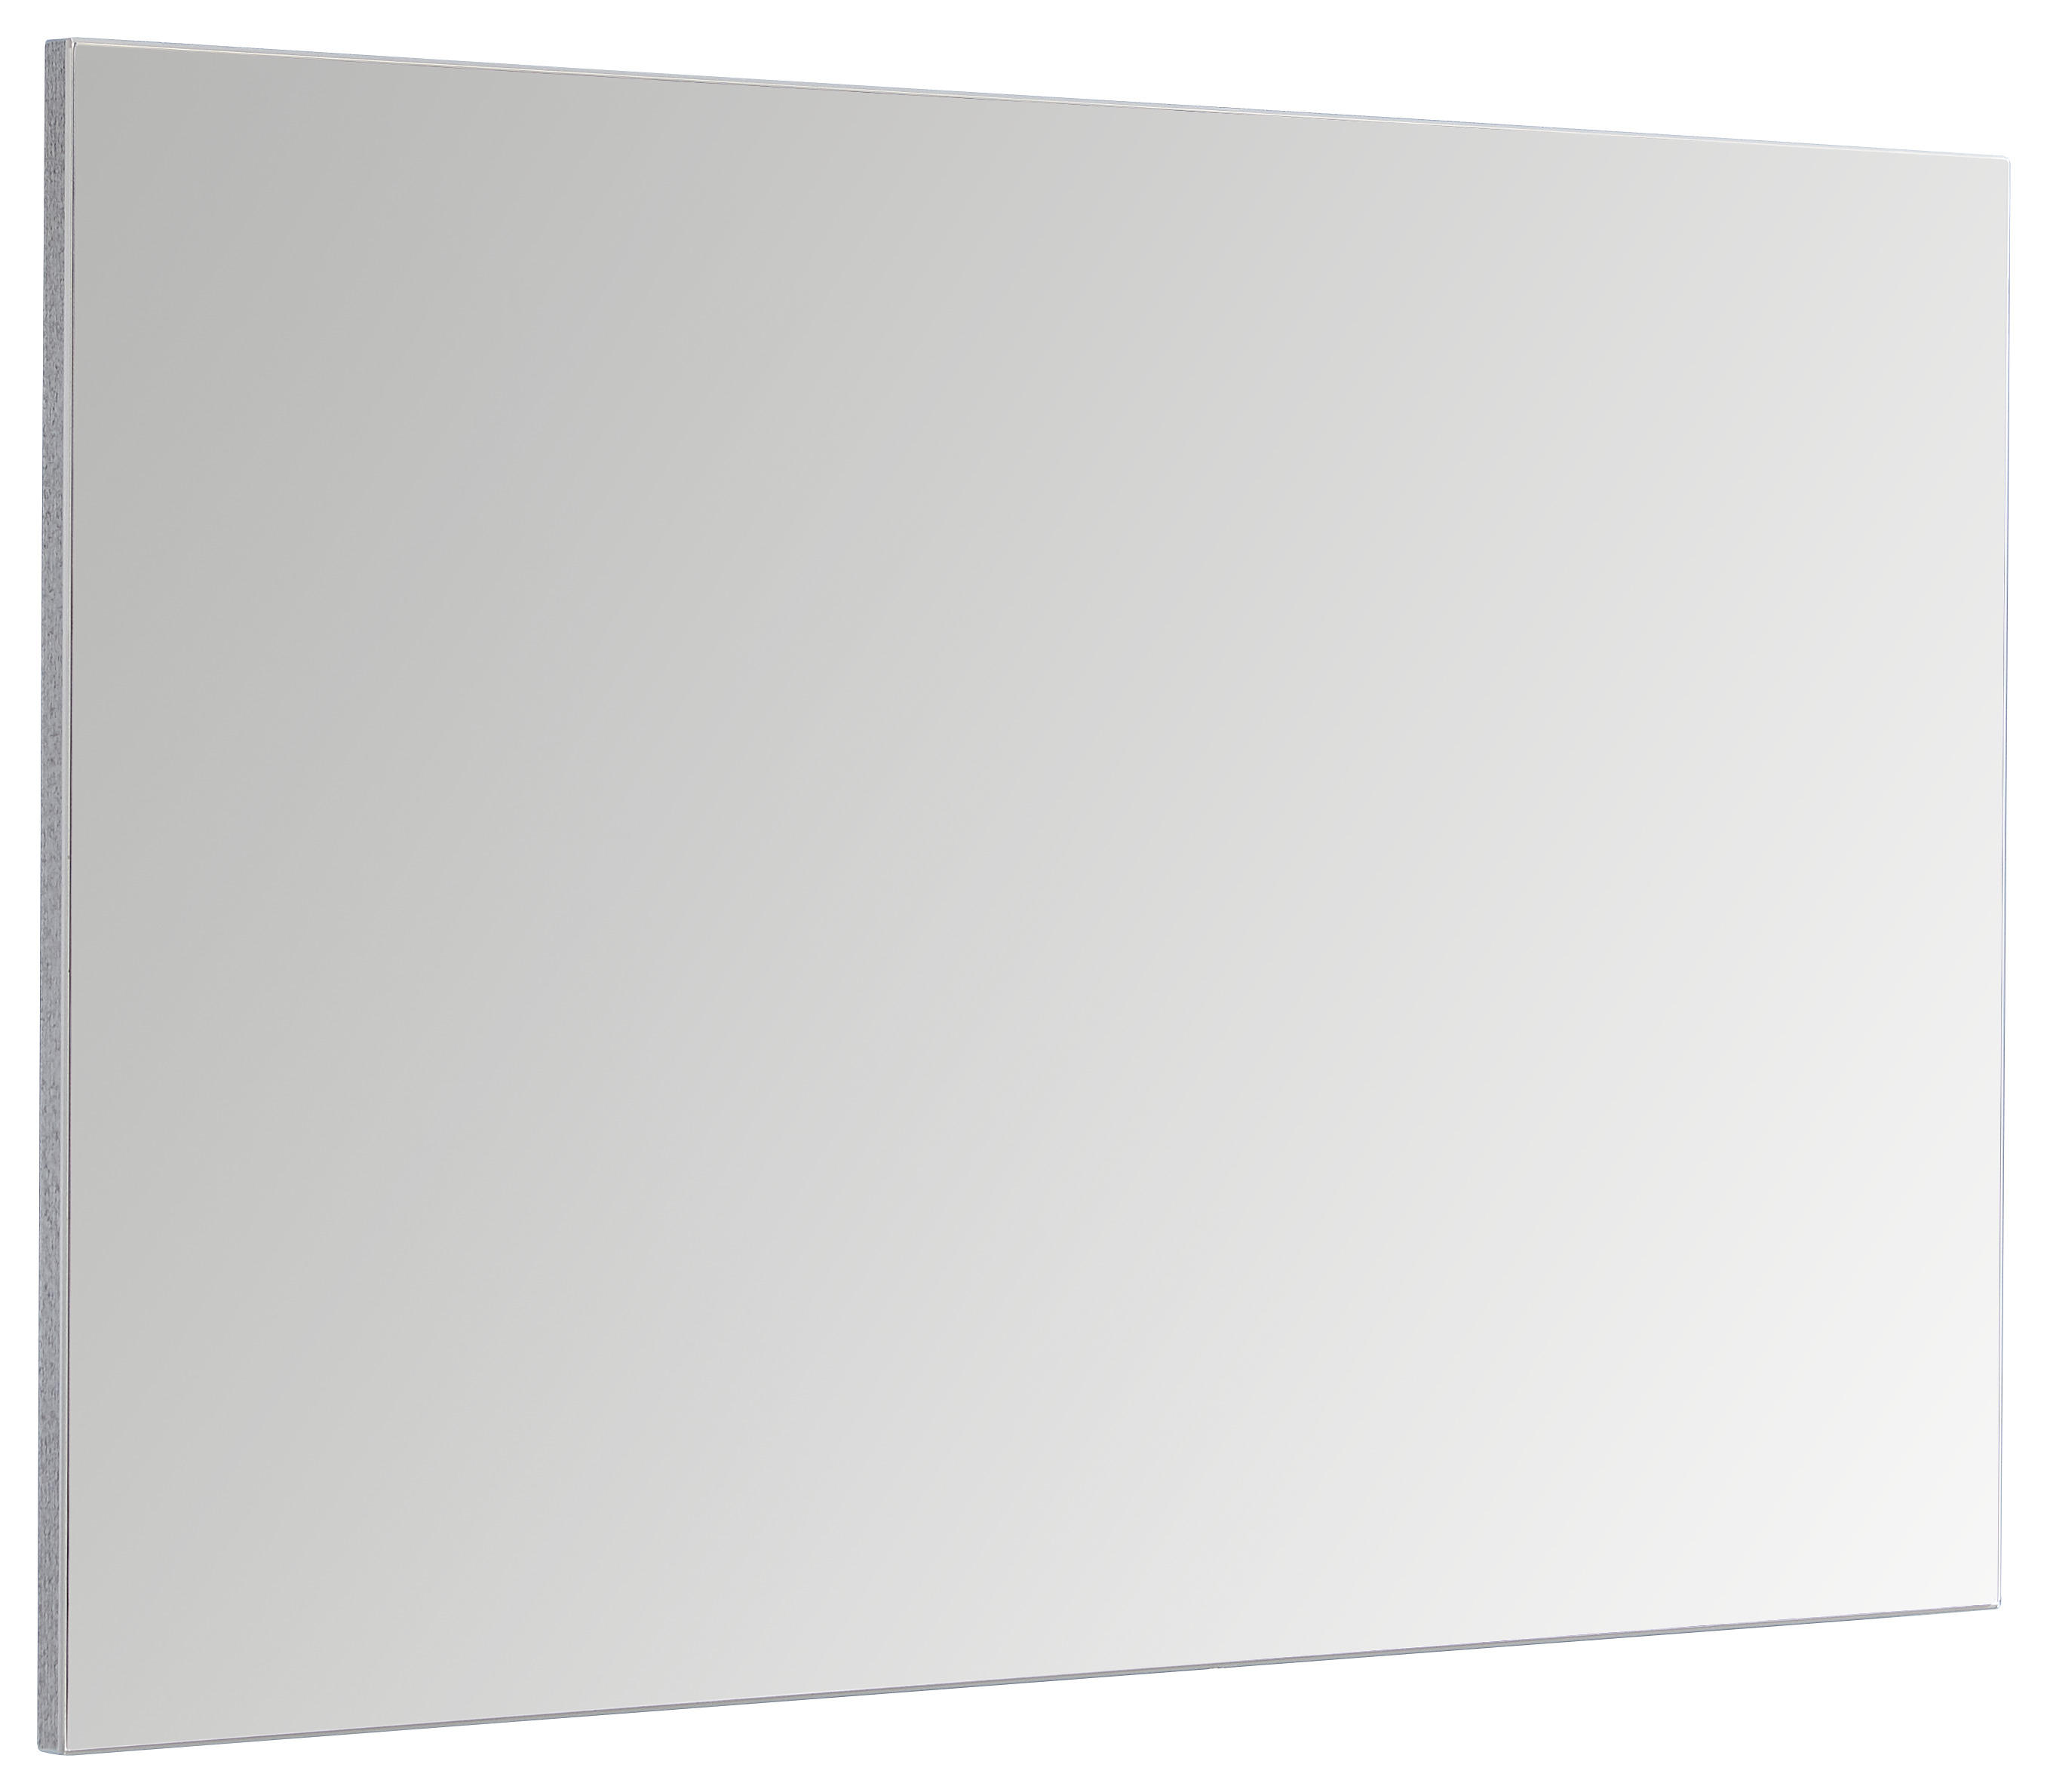 WANDSPIEGEL 90/60/4 cm    - Design, Glas/Kunststoff (90/60/4cm) - Carryhome